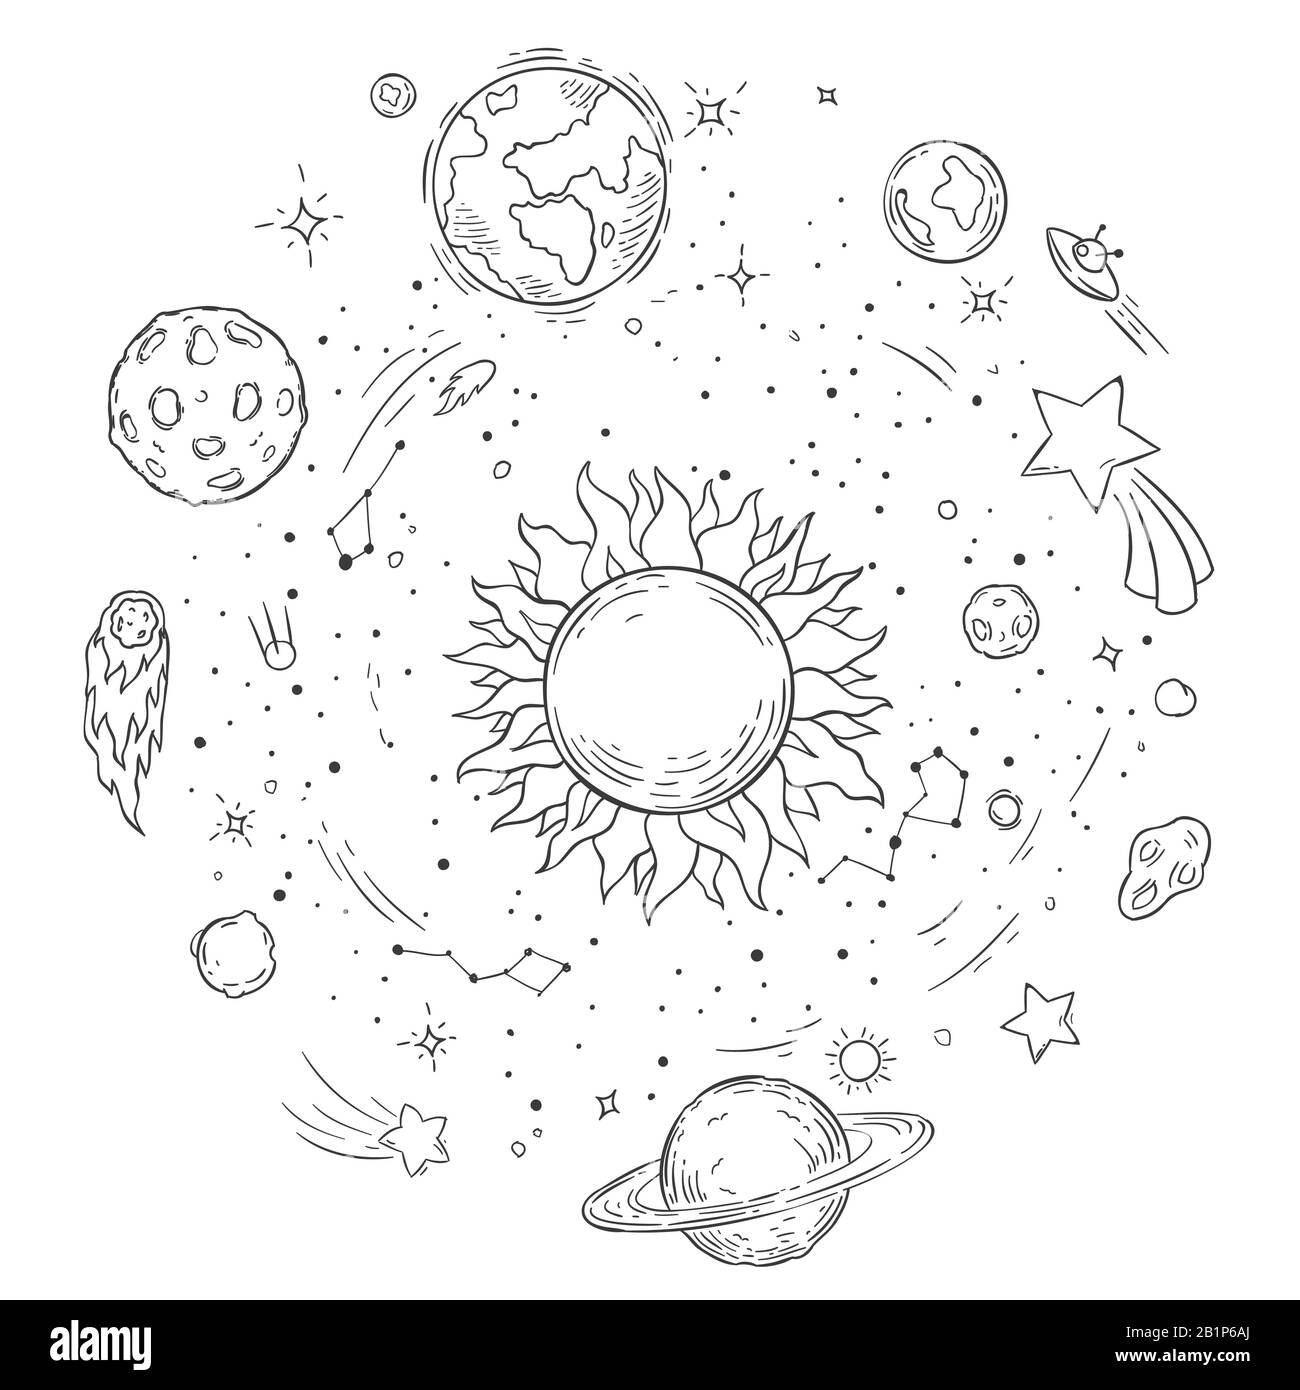 Doodle Sonnensystem. Handgezogene Sonne, kosmischer Komet und Planeten-Erde-Vektorgrafiken. Außenraum Monochrom-Farbband-Zeichnung. Himmelskörper Stock Vektor